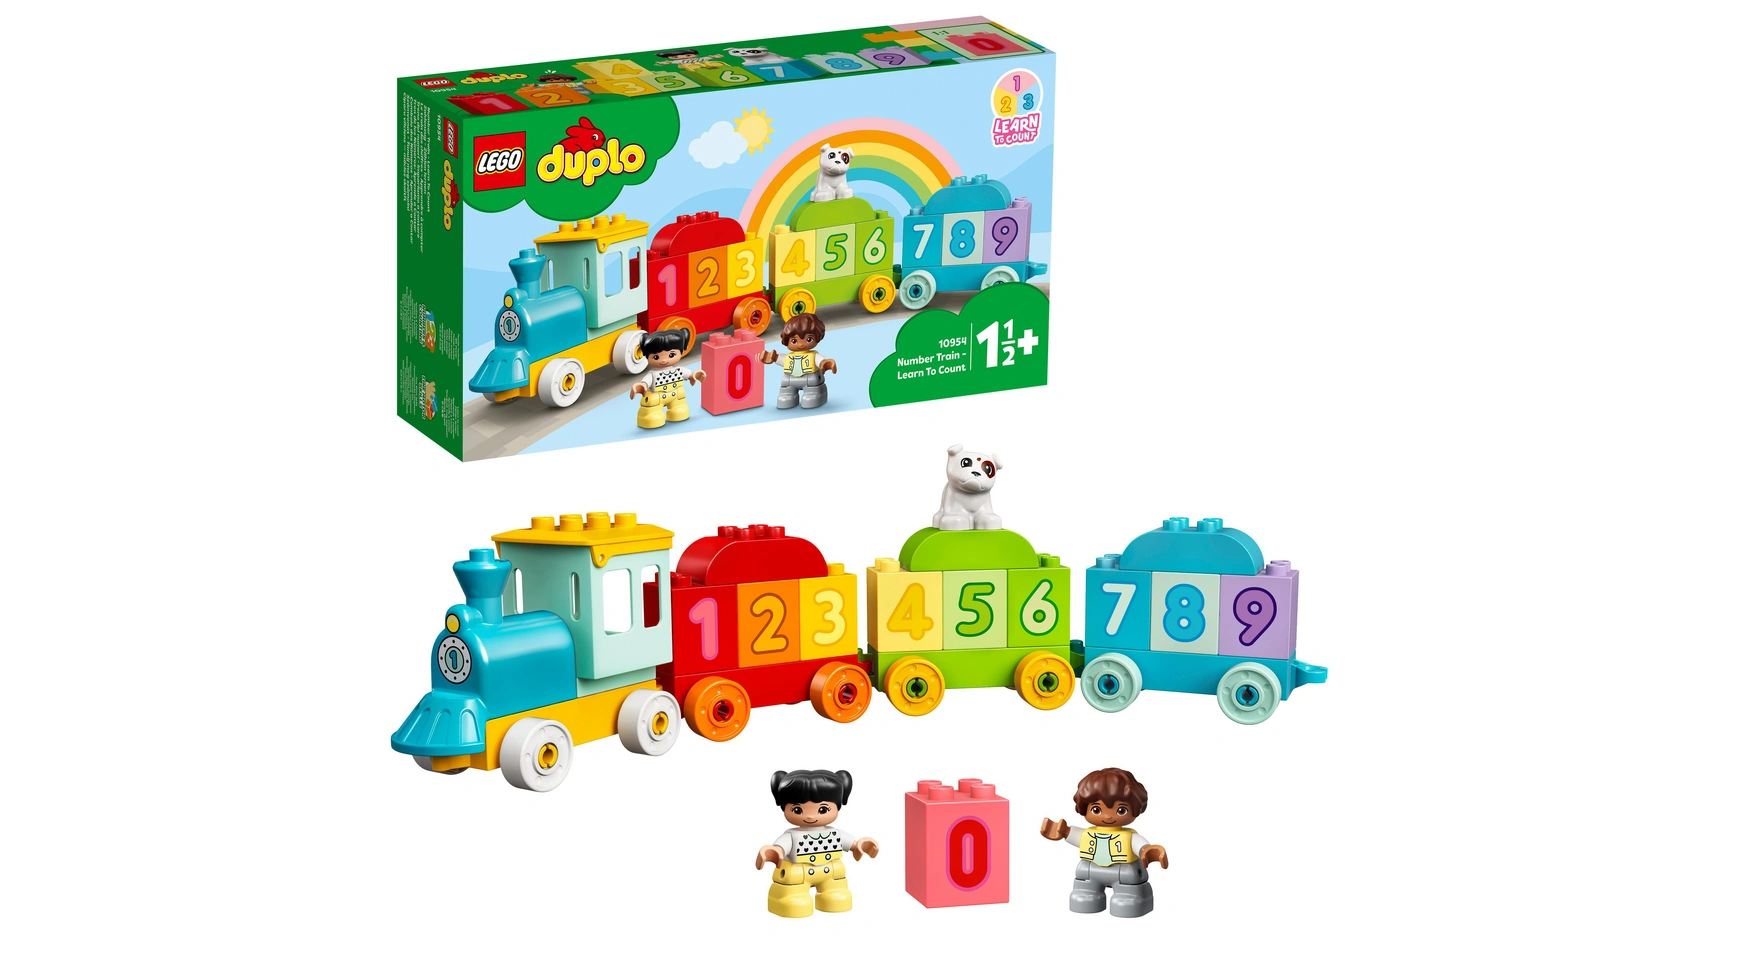 Lego DUPLO Цифровой поезд Учимся считать, детская игрушка, поезд lego lego duplo гоночные машины